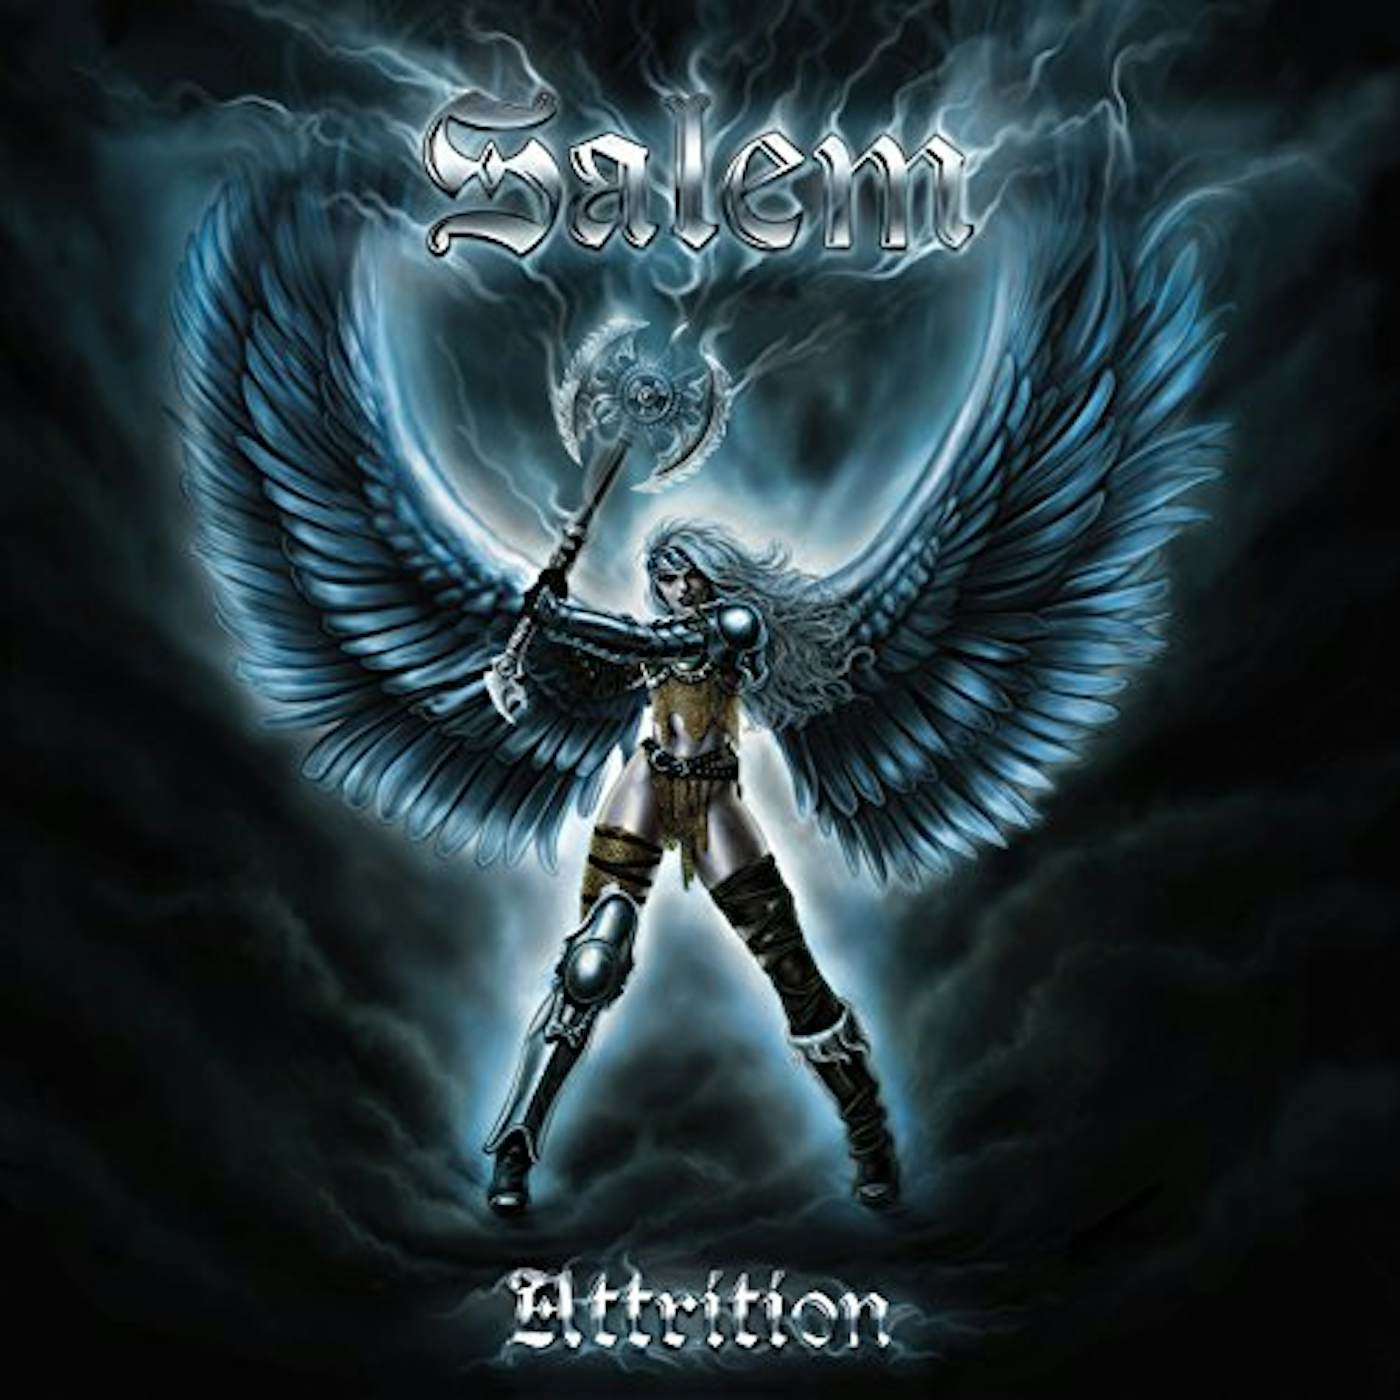 Salem ATTRITION CD